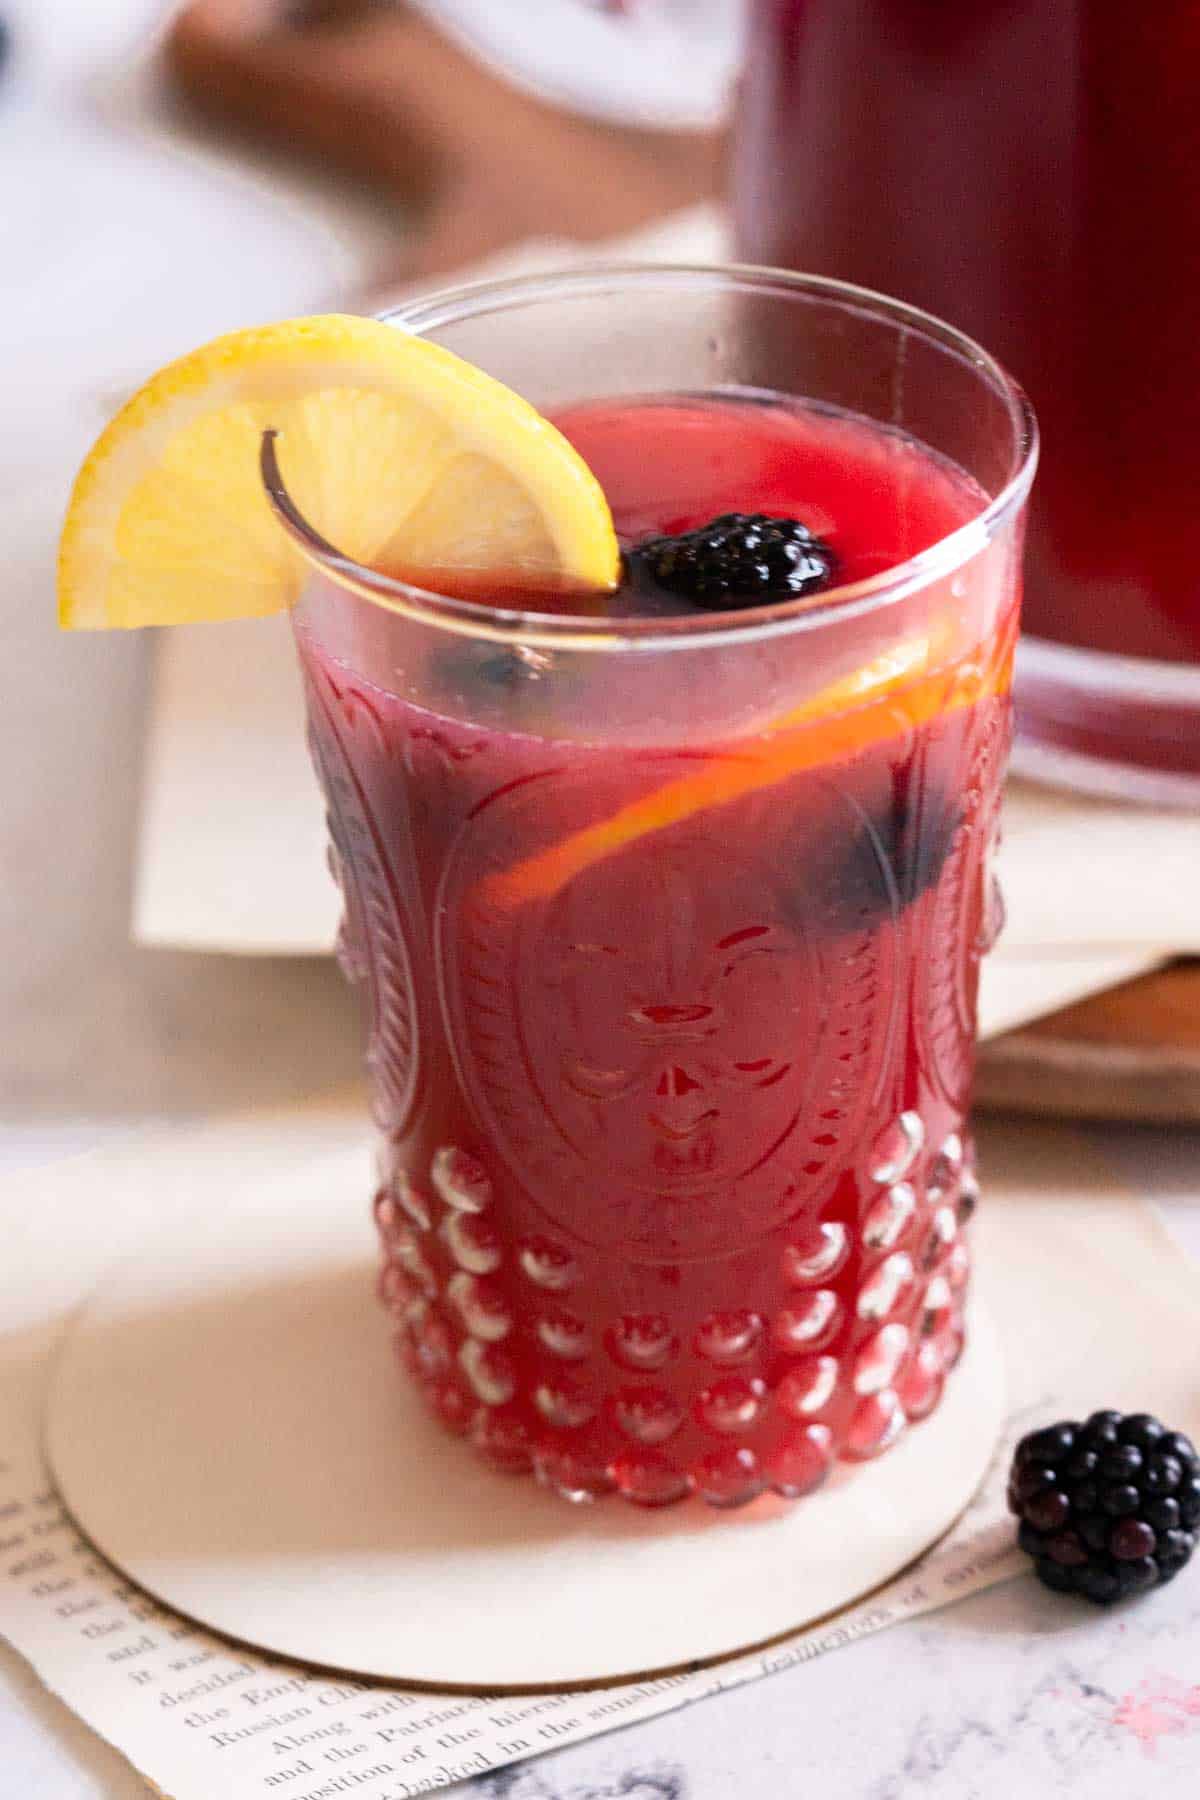 Glass of lemonade with lemon slices and blackberries.